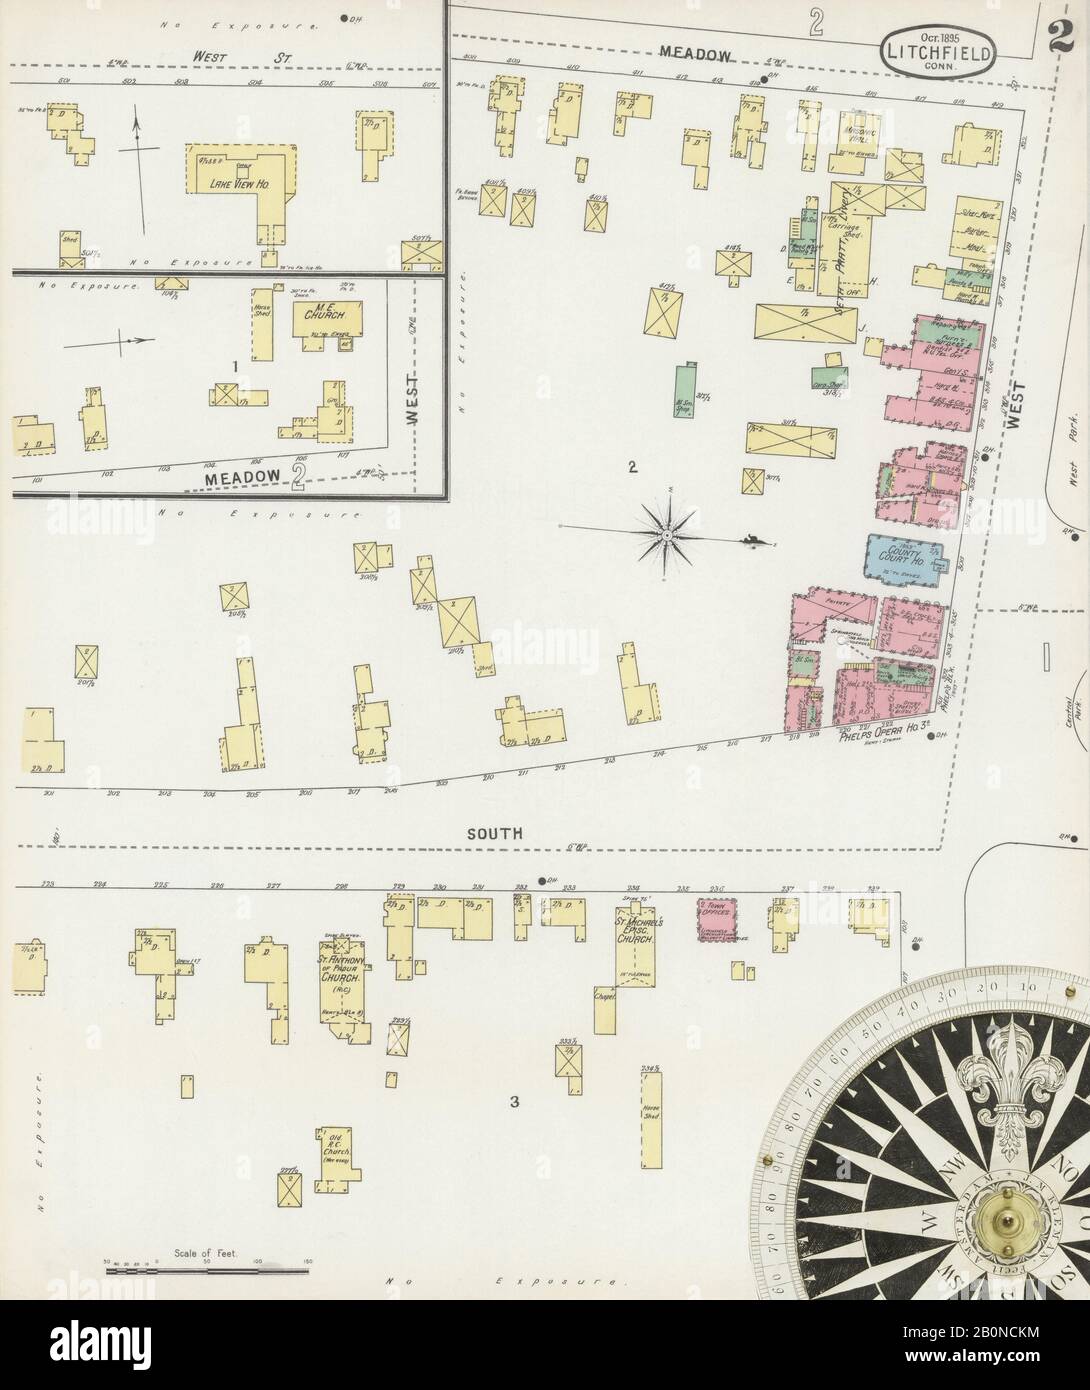 Image 2 De La Carte D'Assurance-Incendie Sanborn De Litchfield, Comté De Litchfield, Connecticut. Oct 1895. 2 feuille(s), Amérique, plan de rue avec un compas du dix-neuvième siècle Banque D'Images